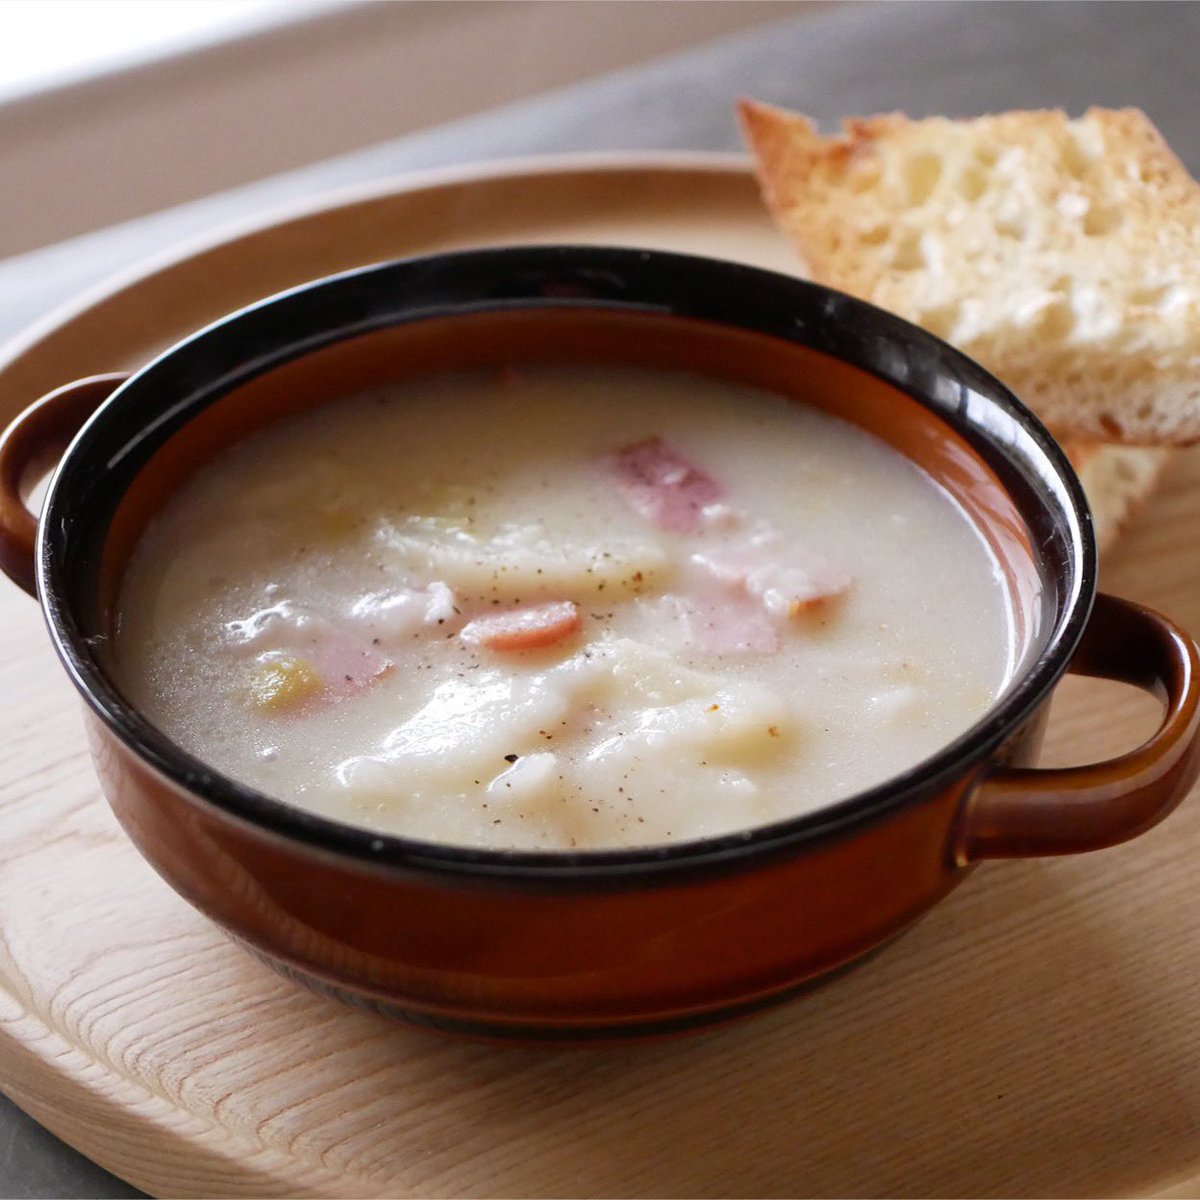 我が家は今日のお昼、有賀さんのレシピから「里いも、長ねぎ、ベーコンのミルクスープ」でした。ベーコンが少なめだったのでお味噌を少し足して。
東京は冷たい雨の1日。こんな日はミルクスープがいいですよね😊 @kaorun6 #365日のめざましスープ #スープ365  